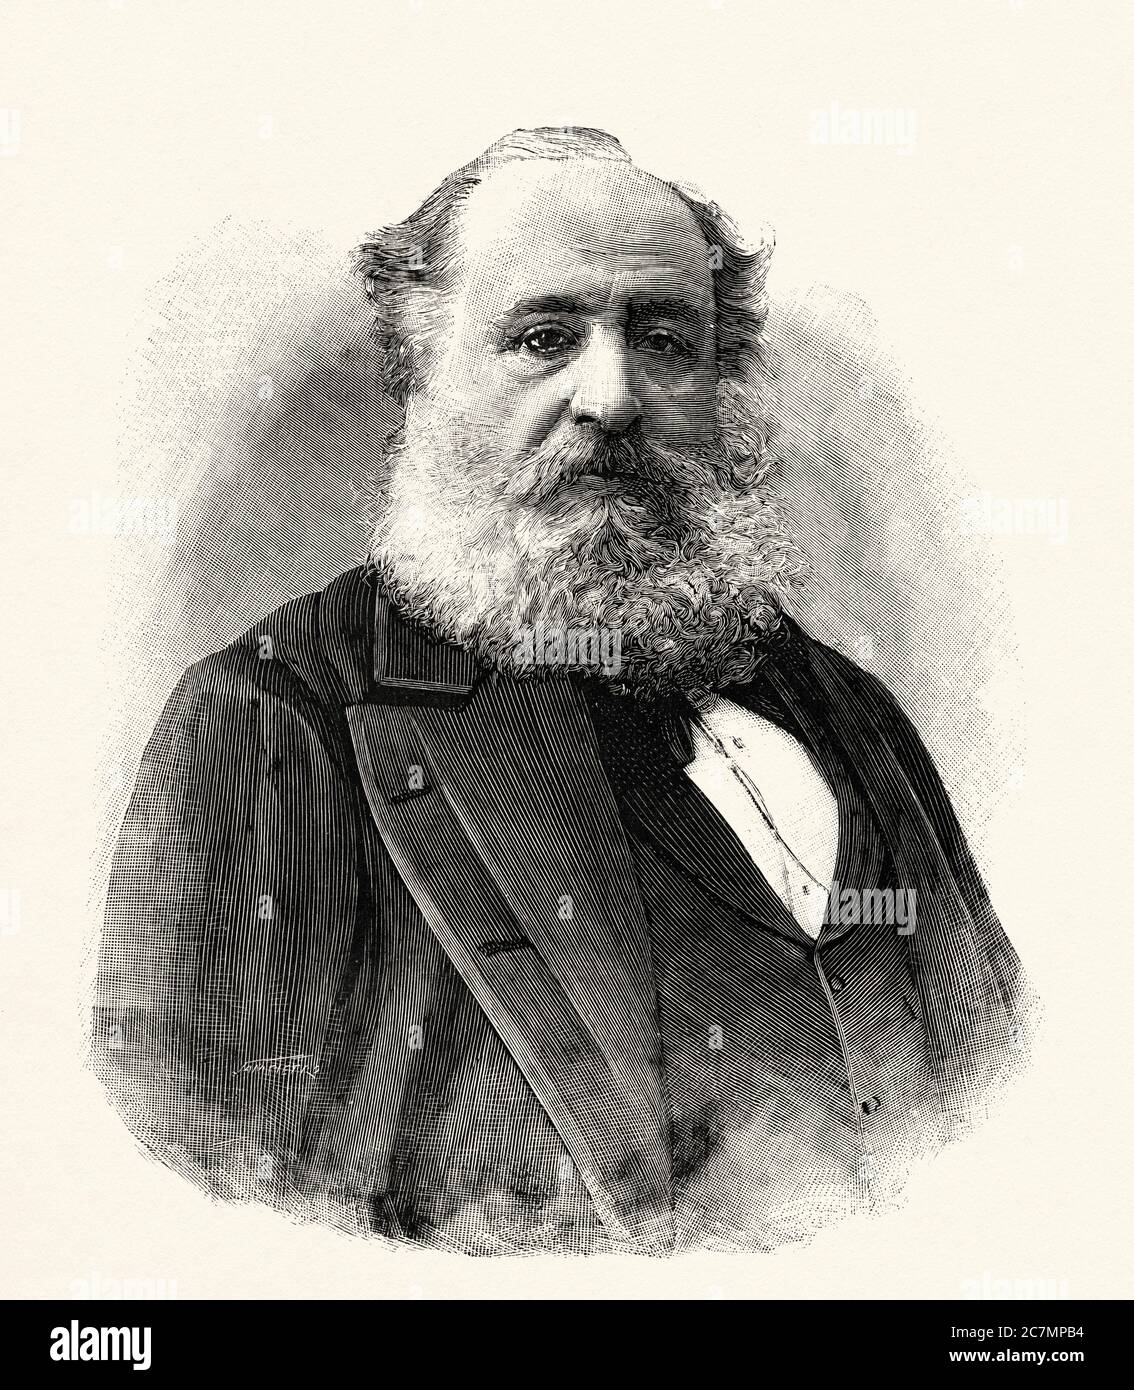 Ignacio Salomón Bauer (1827 - 1895) fue un banquero español de origen  húngaro, representante del banco Rotschchild en Madrid, España. De la  Ilustracion Española y Americana 1895 Fotografía de stock - Alamy